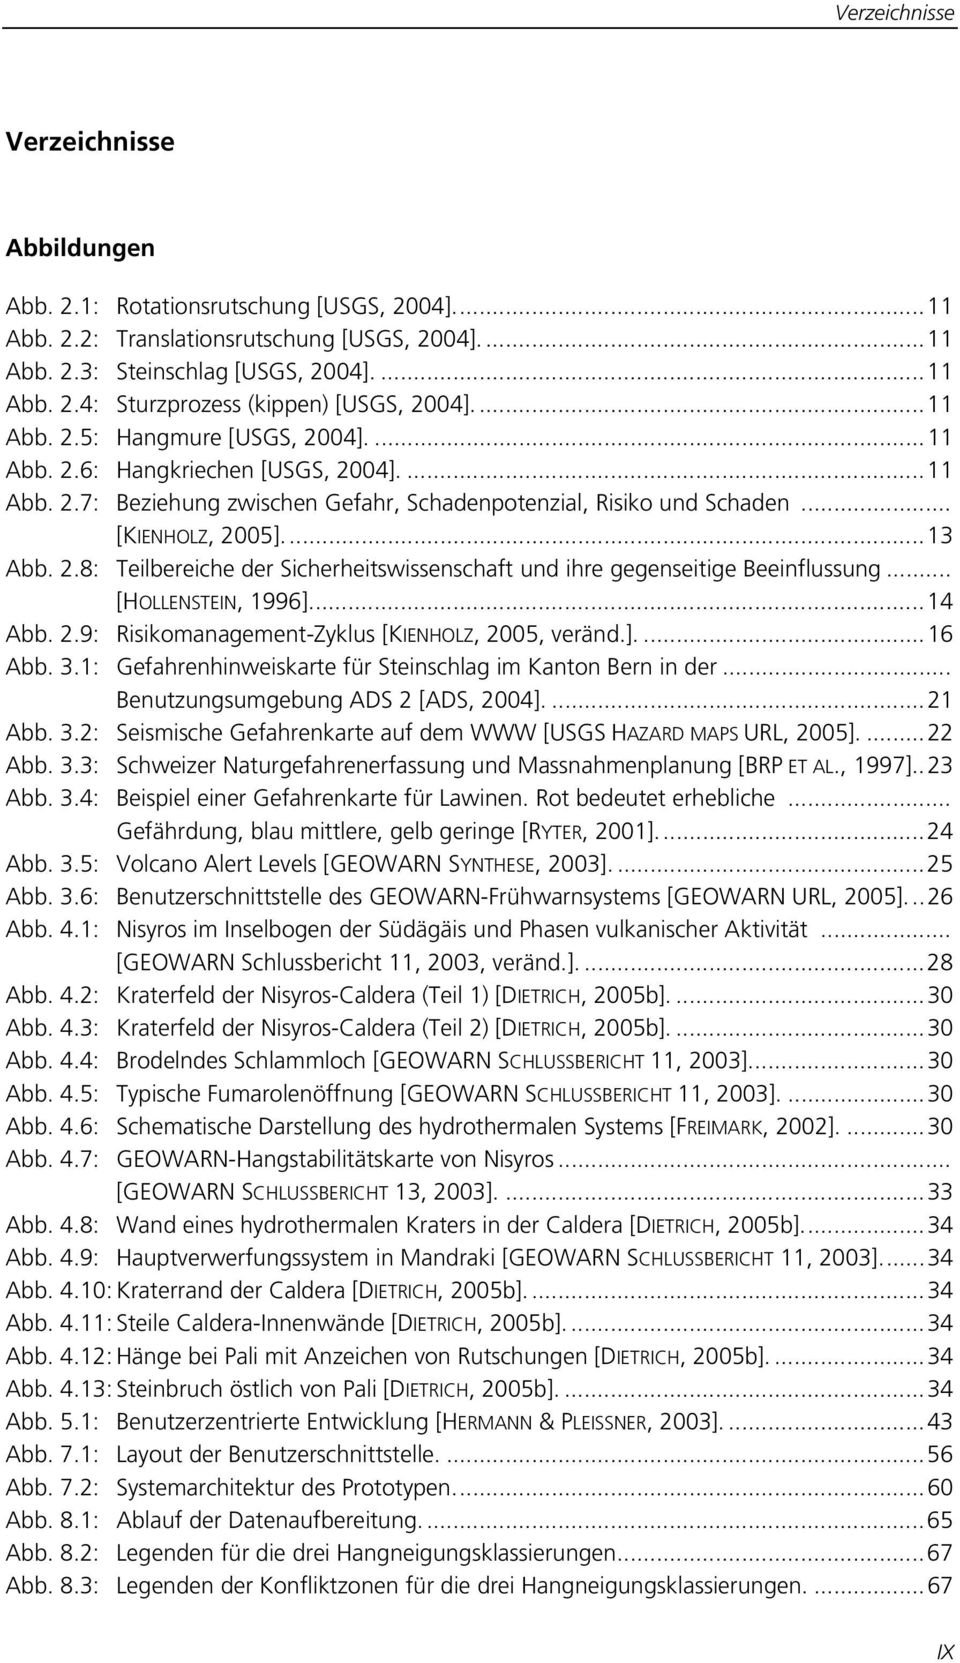 .. [HOLLENSTEIN, 1996]...14 Abb. 2.9: Risikomanagement-Zyklus [KIENHOLZ, 2005, veränd.]....16 Abb. 3.1: Gefahrenhinweiskarte für Steinschlag im Kanton Bern in der.